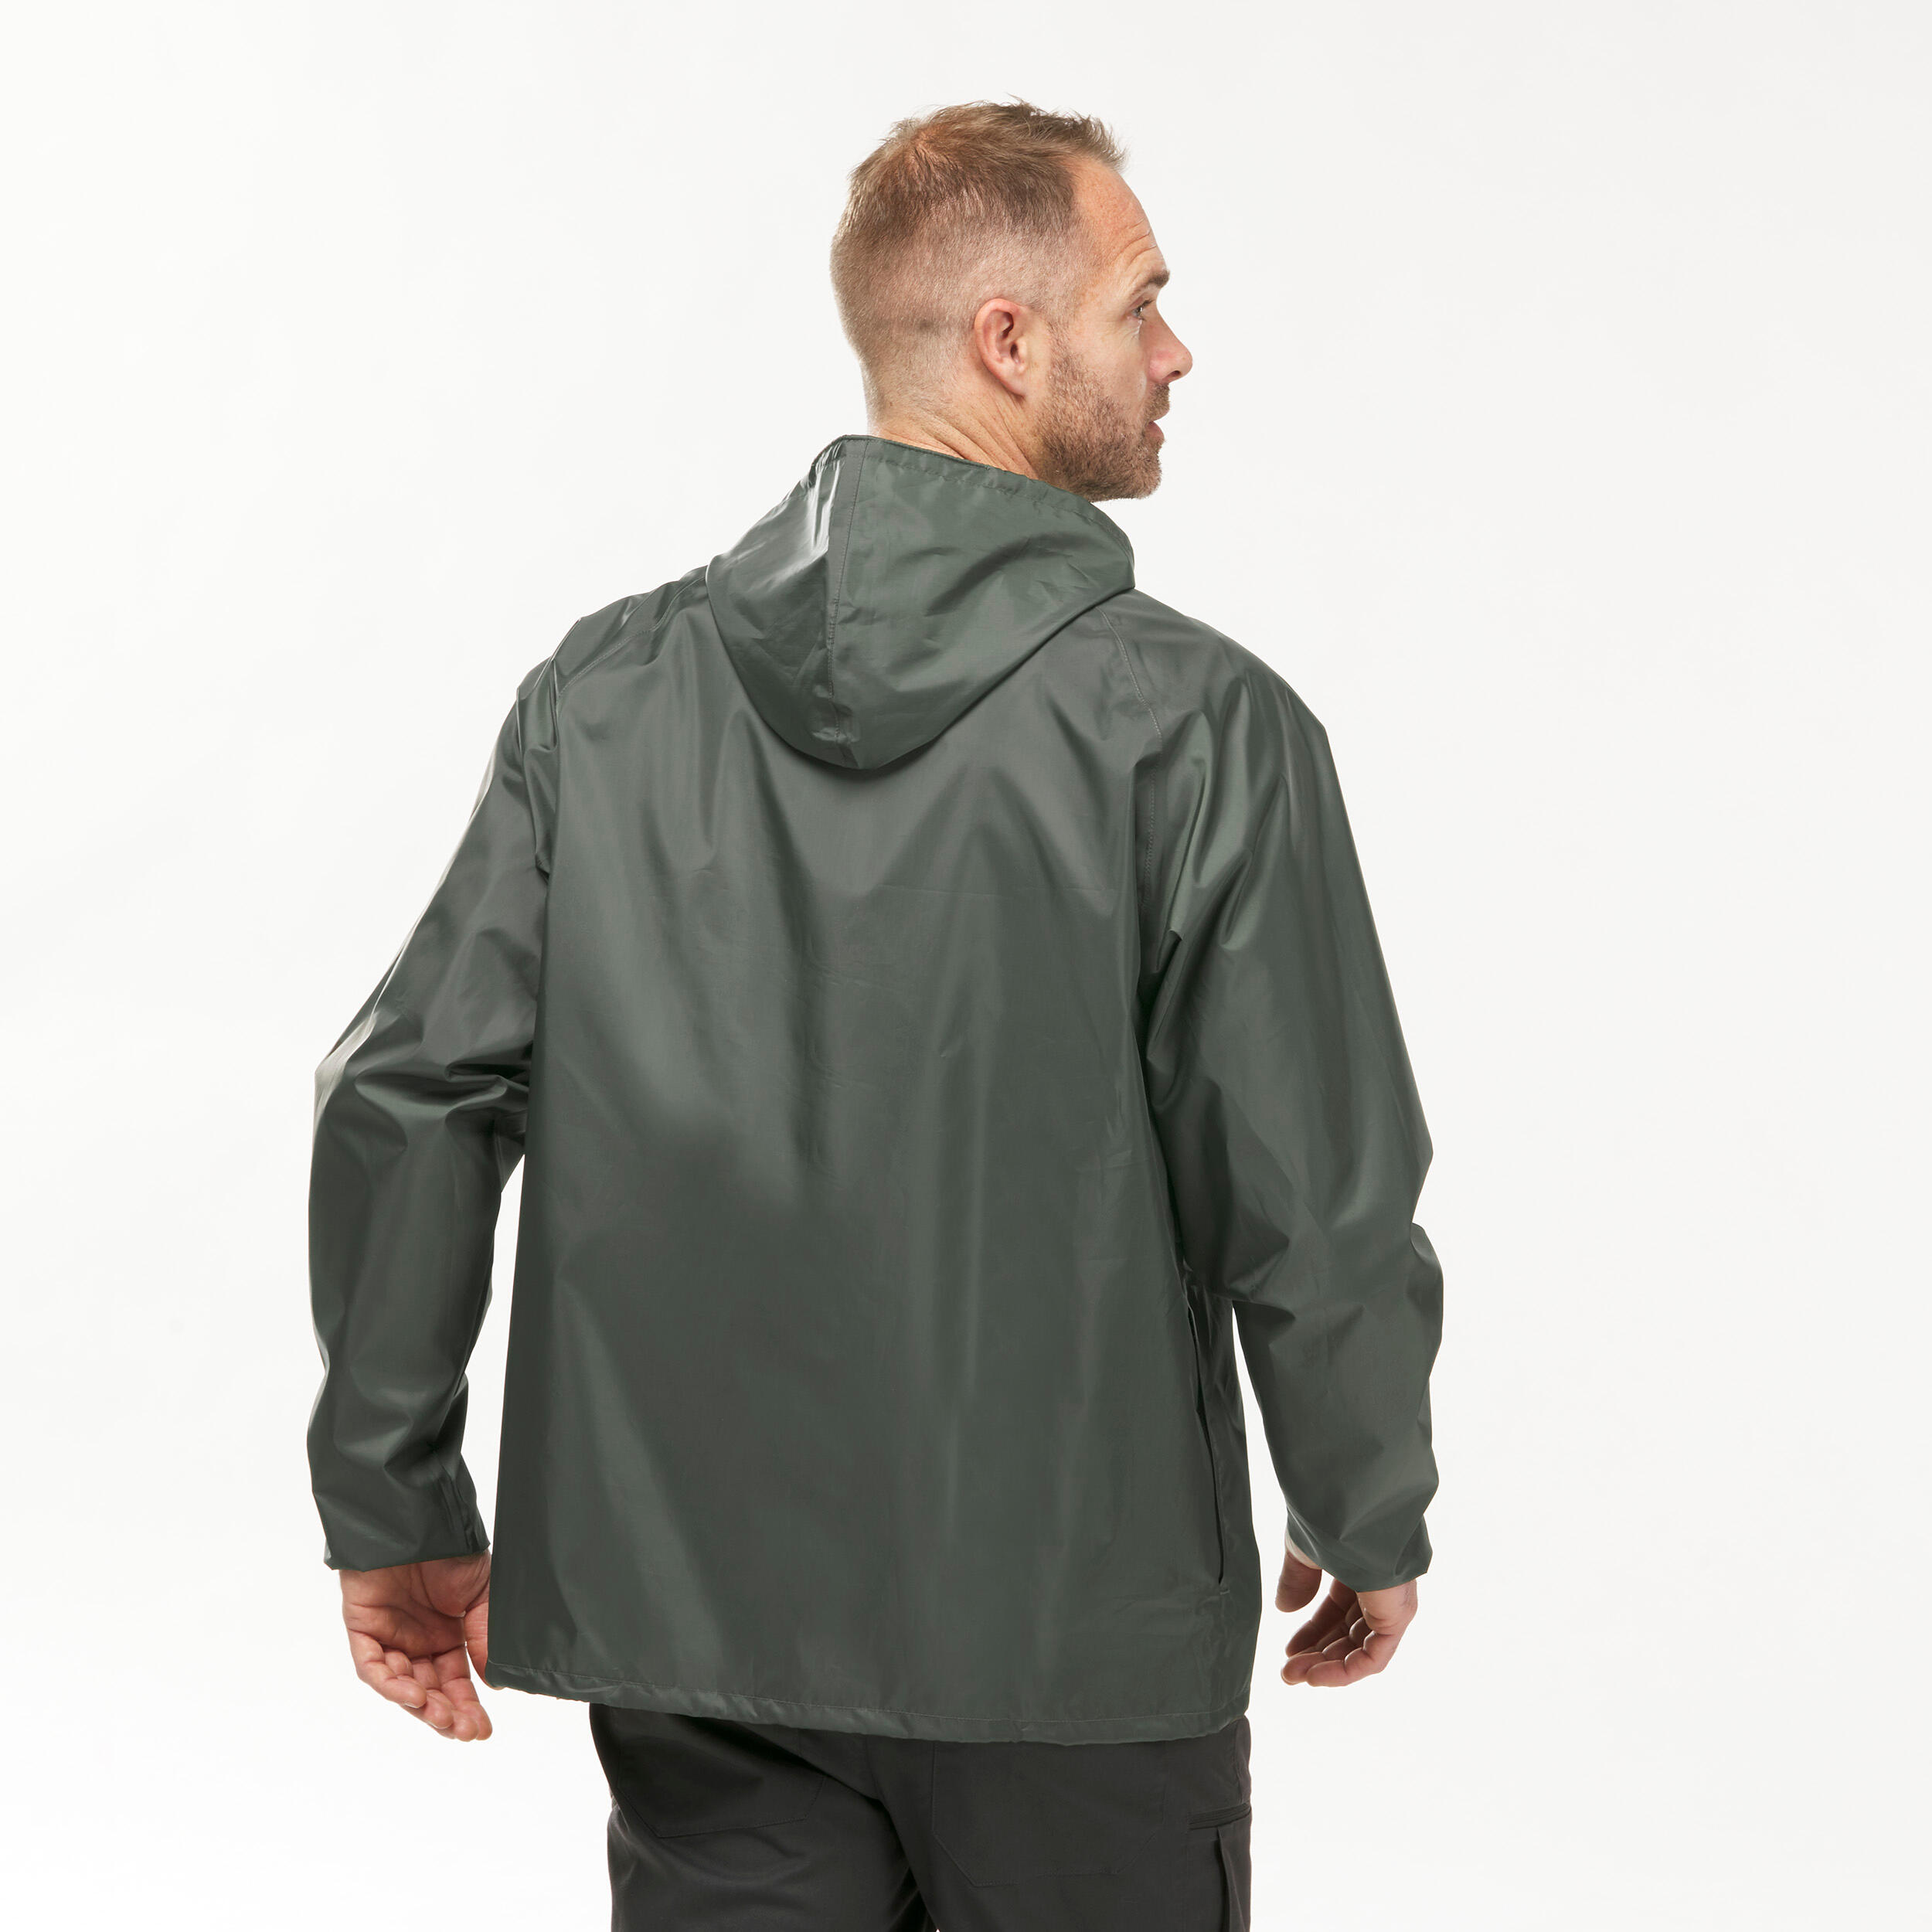 Men's Windproof and Water-repellent Hiking Jacket - Raincut 1/2 Zip 4/9